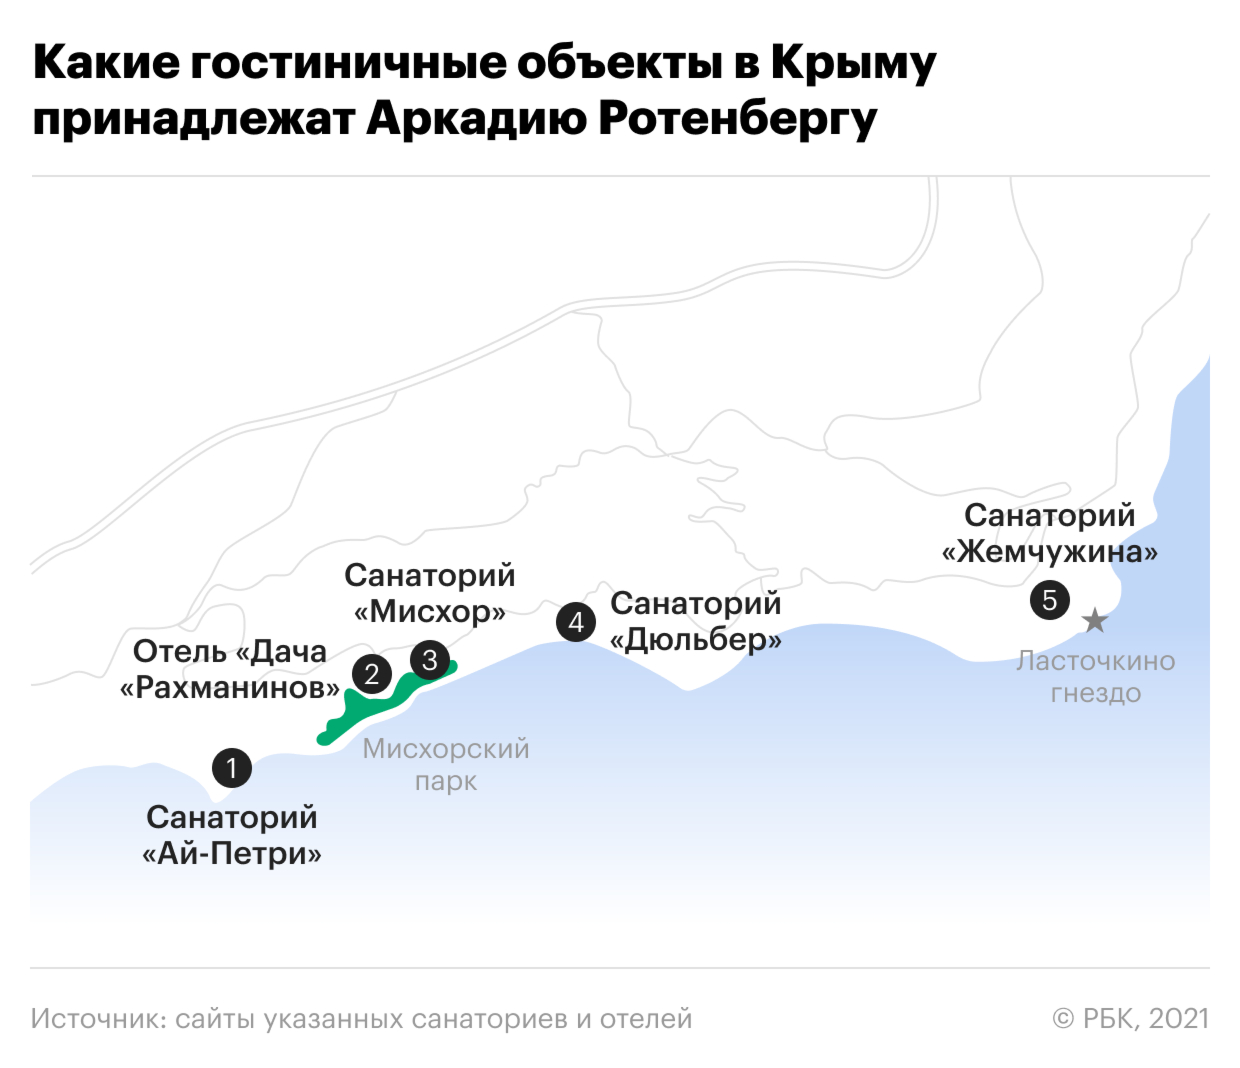 Аркадий Ротенберг раскрыл свои туристические активы в Крыму